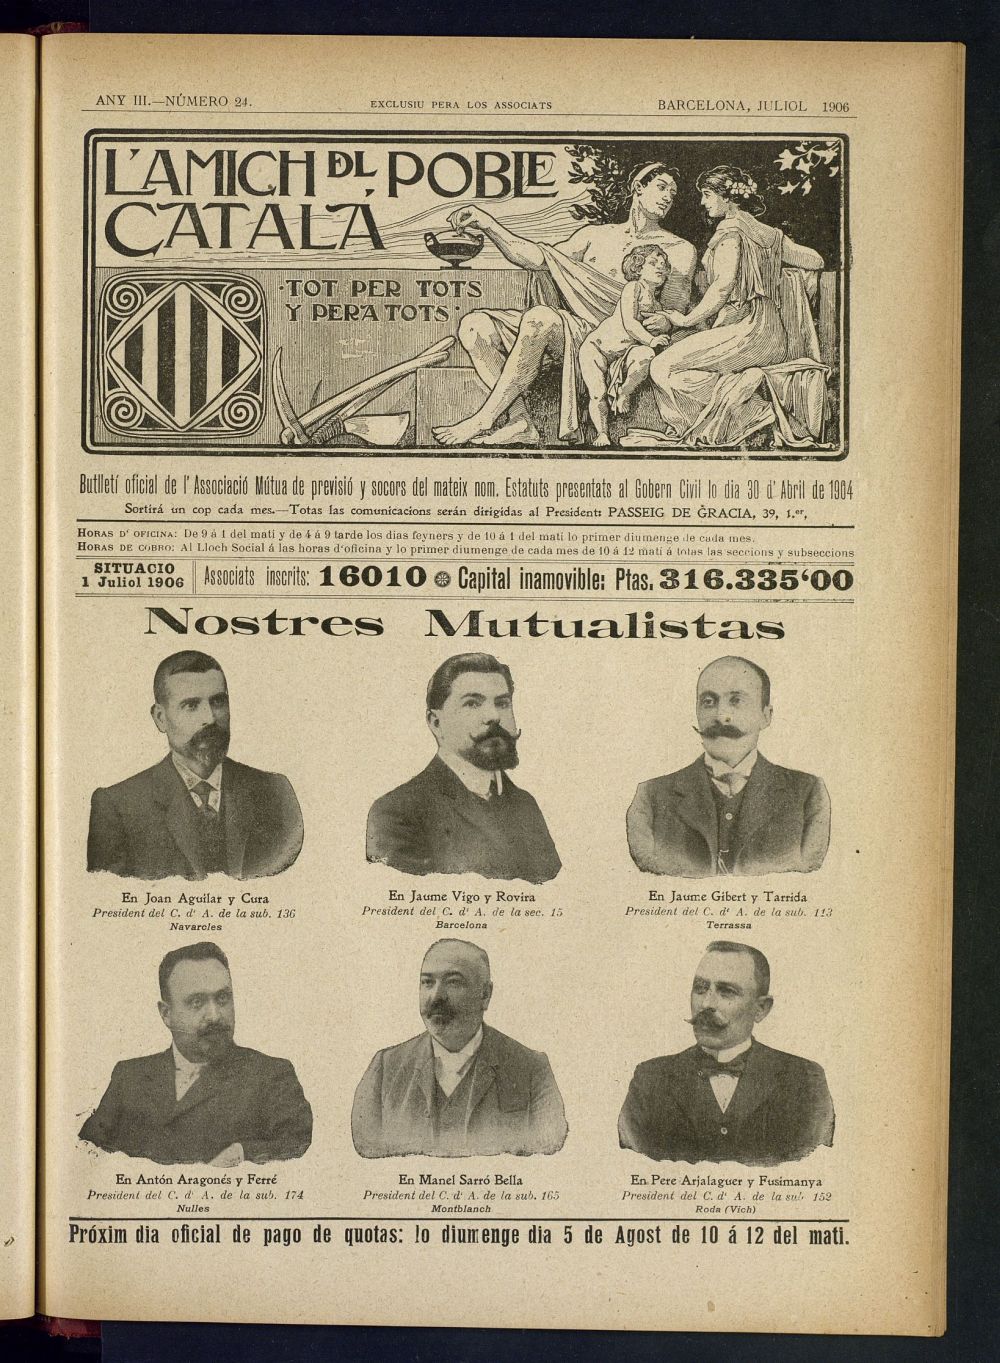 Lamich del poble catal: butllet oficial de lassociacio, ques publicara una volta cada mes de juliol de 1906